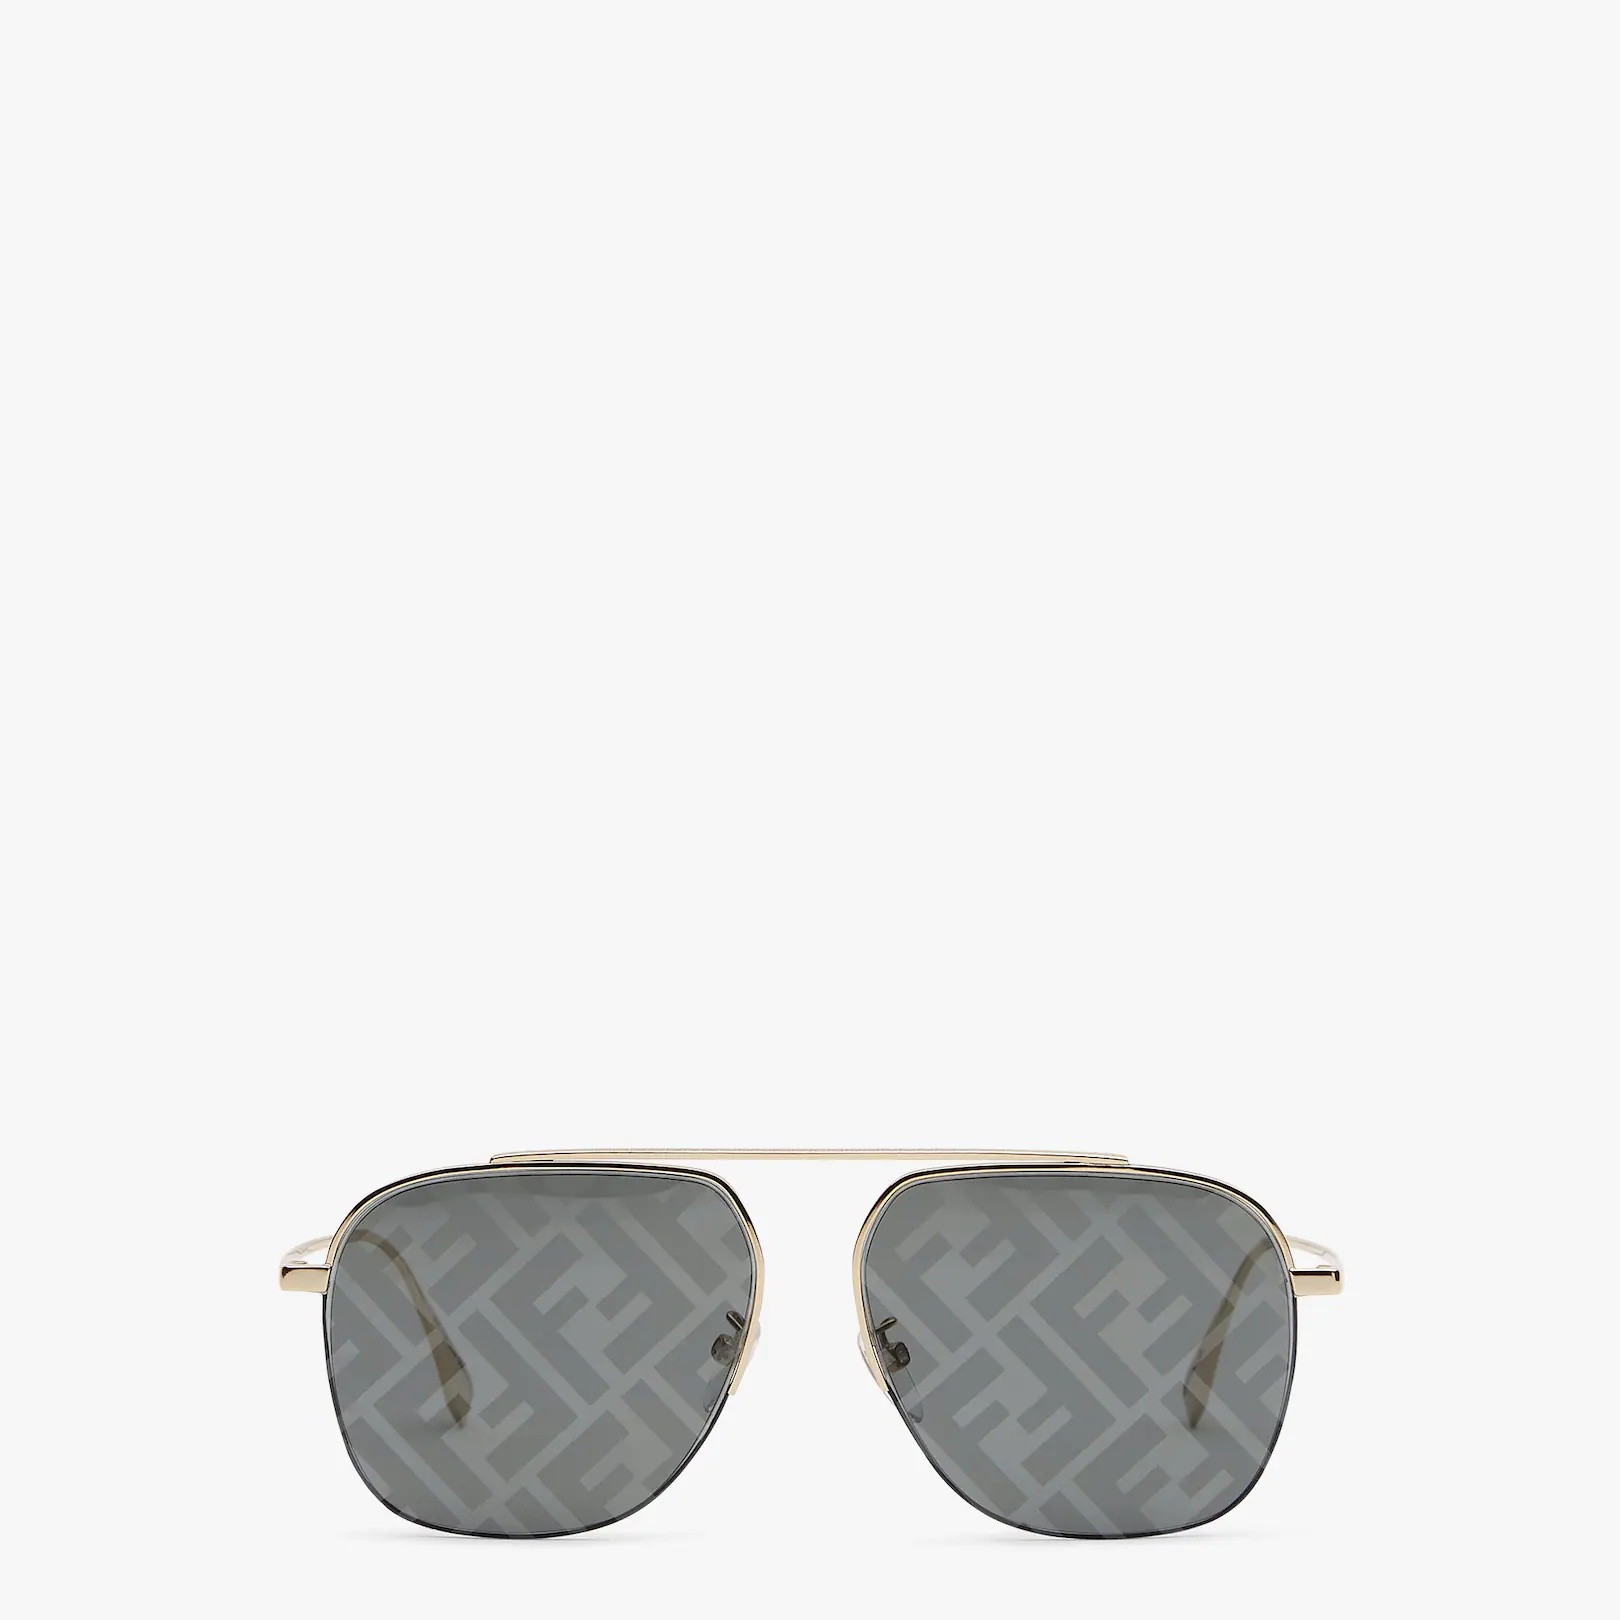 Gold-colored sunglasses - 1